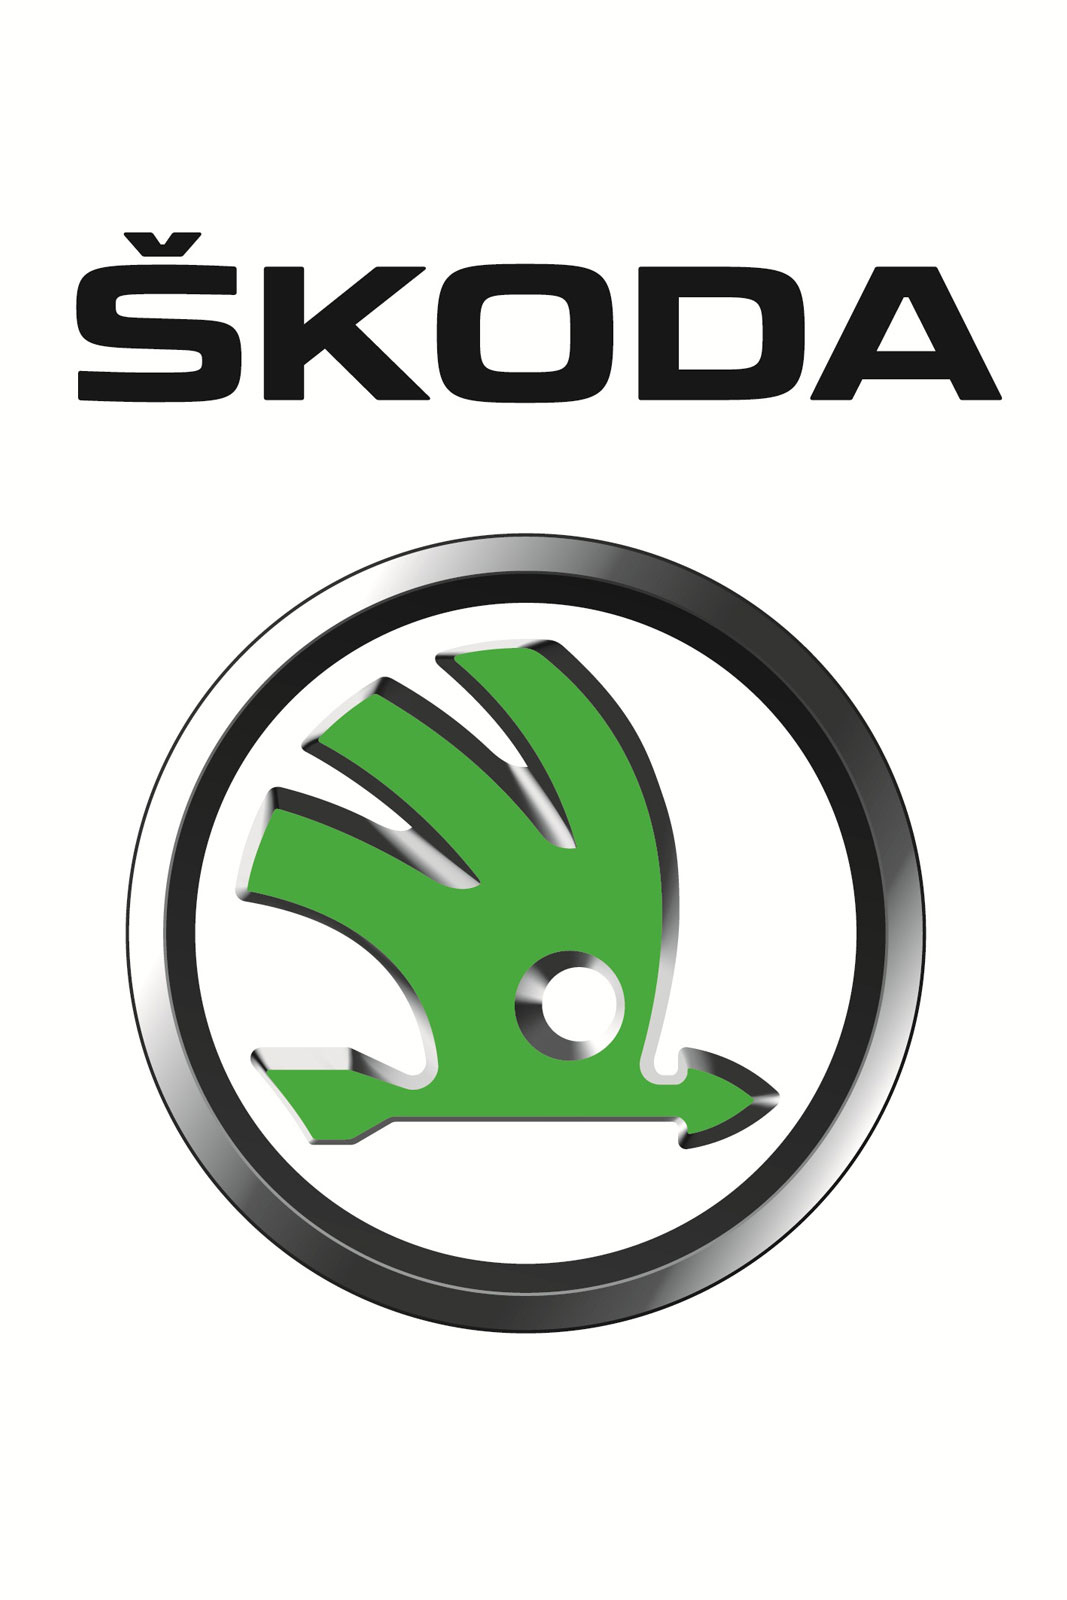 Škoda Logo, Škoda Car Symbol Meaning and History | Car ...